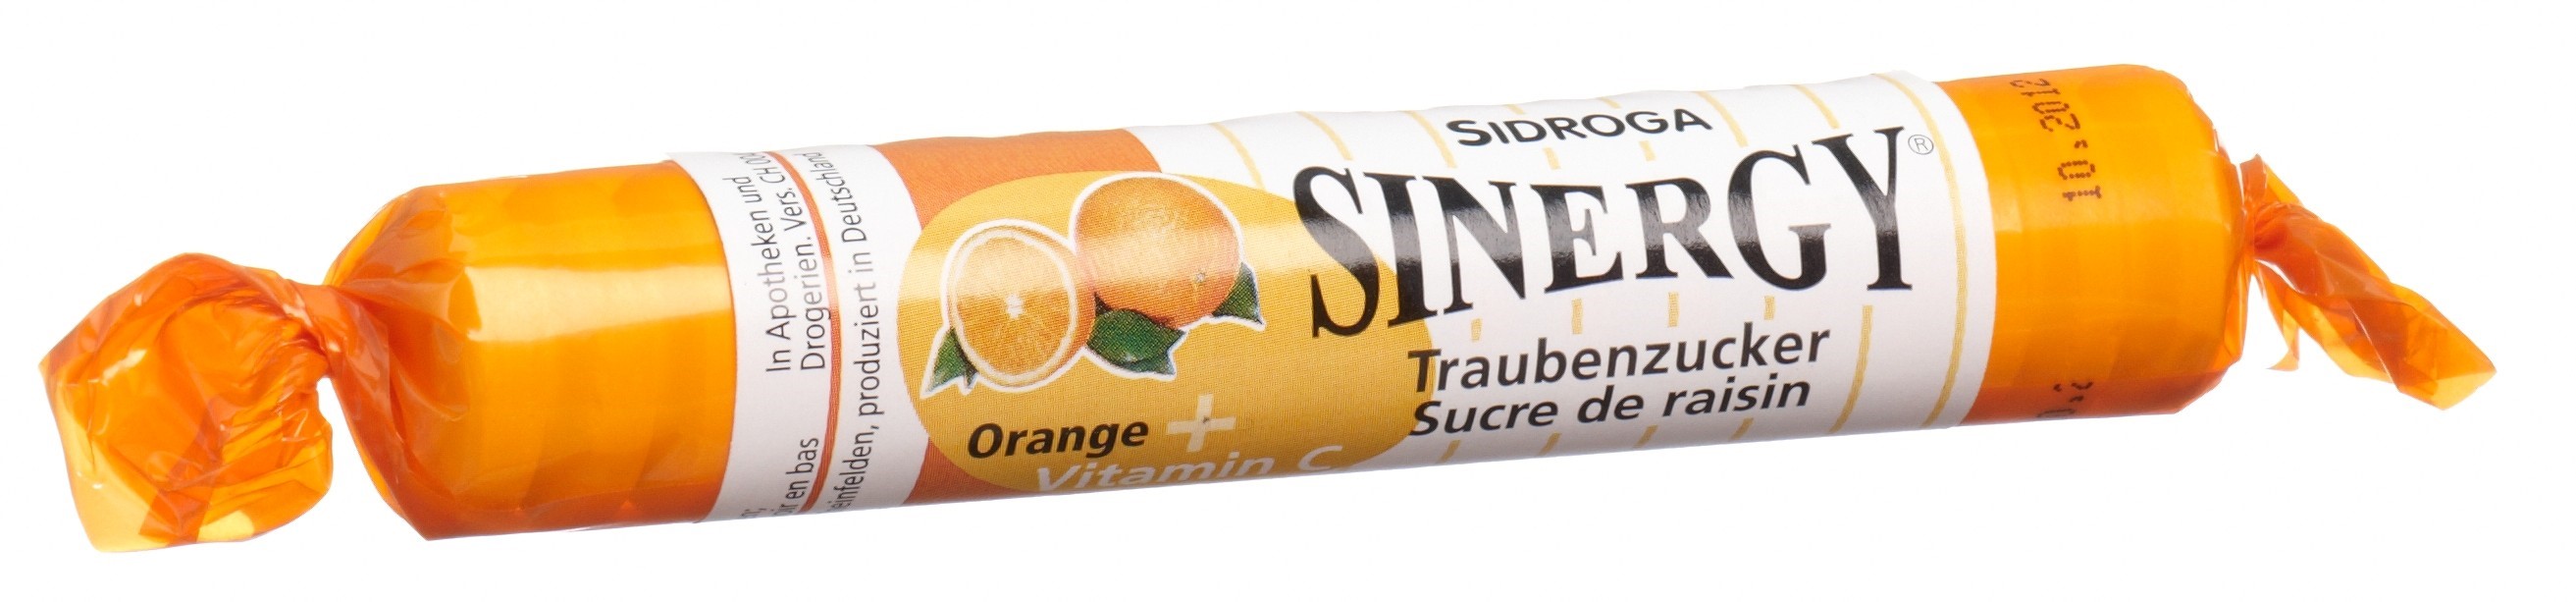 SINERGY Traubenzucker Orange Vitamin C Rolle 40 g